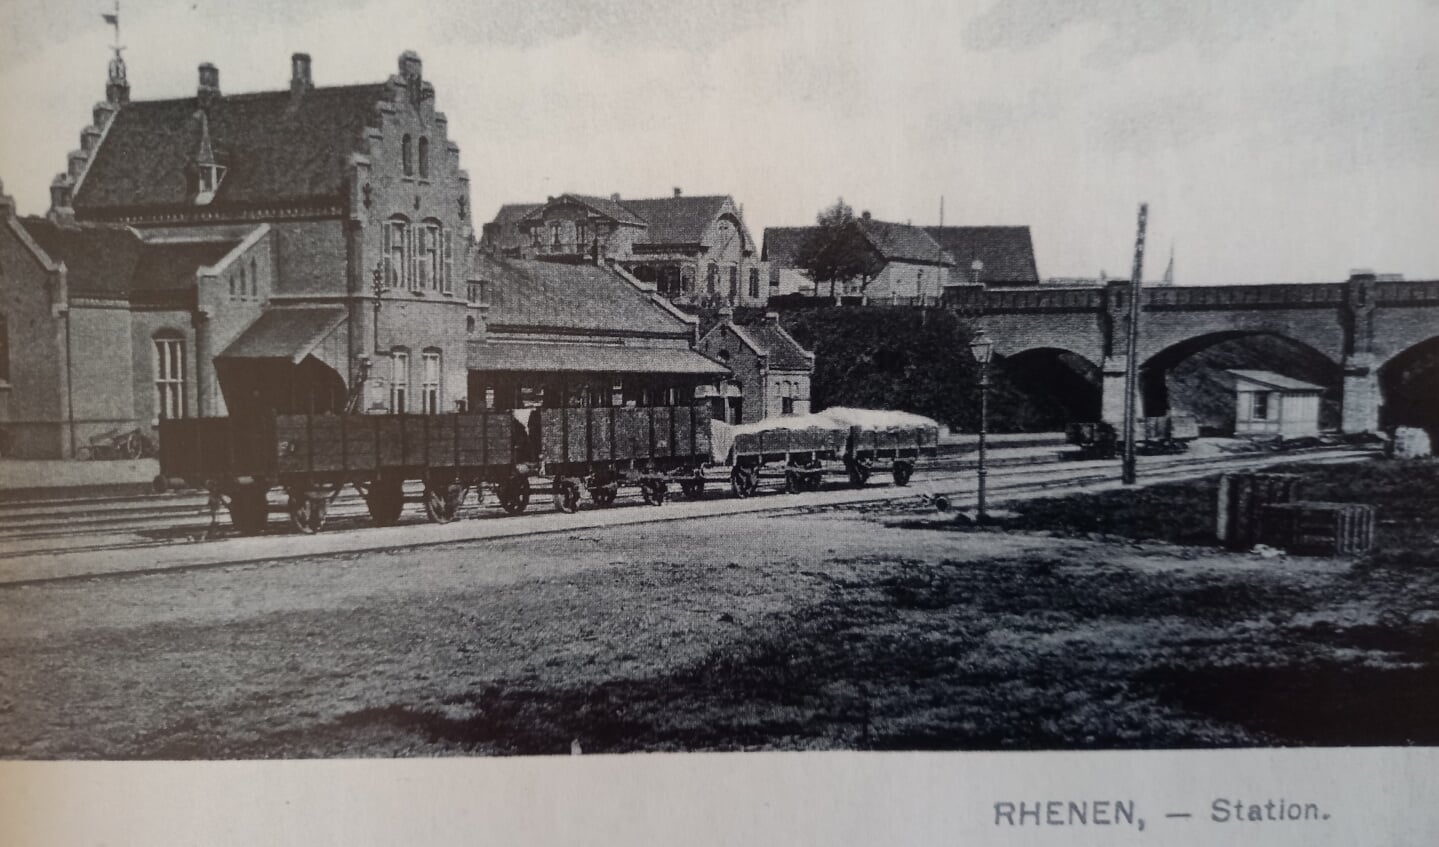 Het oude station van Rhenen is nu voor het eerst in Anker-steentjes gemaakt.